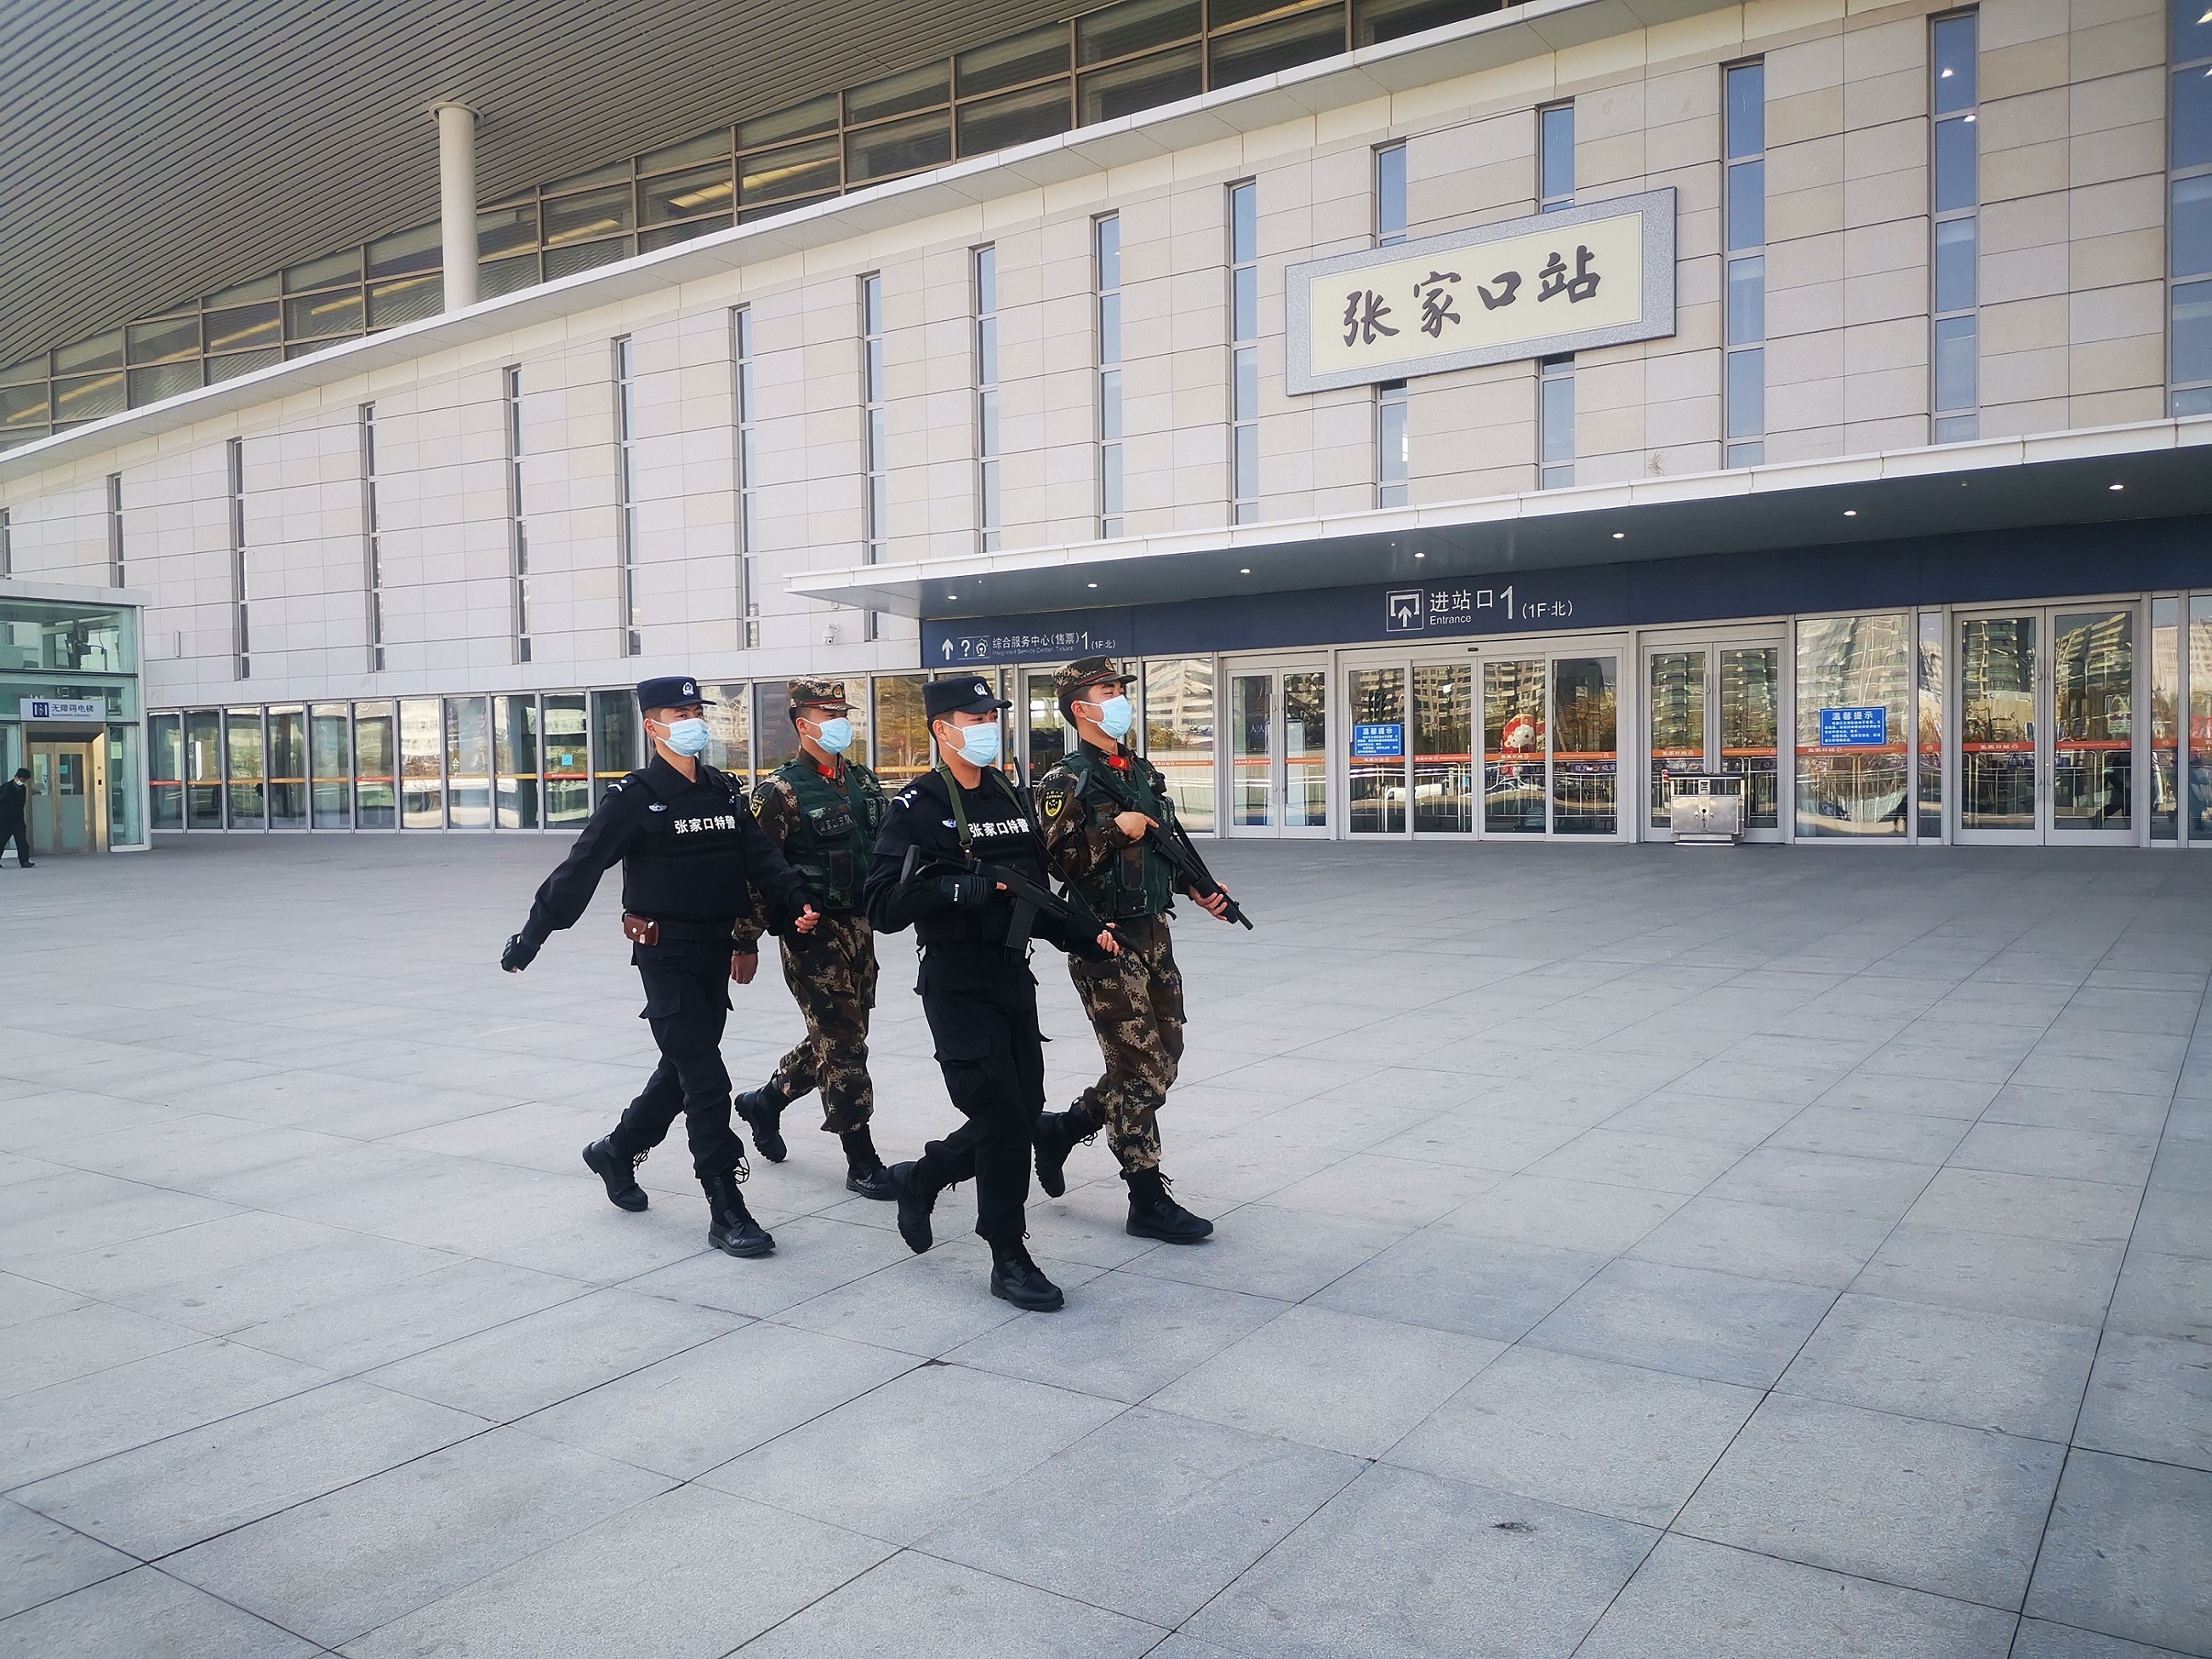 摄影展示:张家口特警在高铁站广场武装巡逻